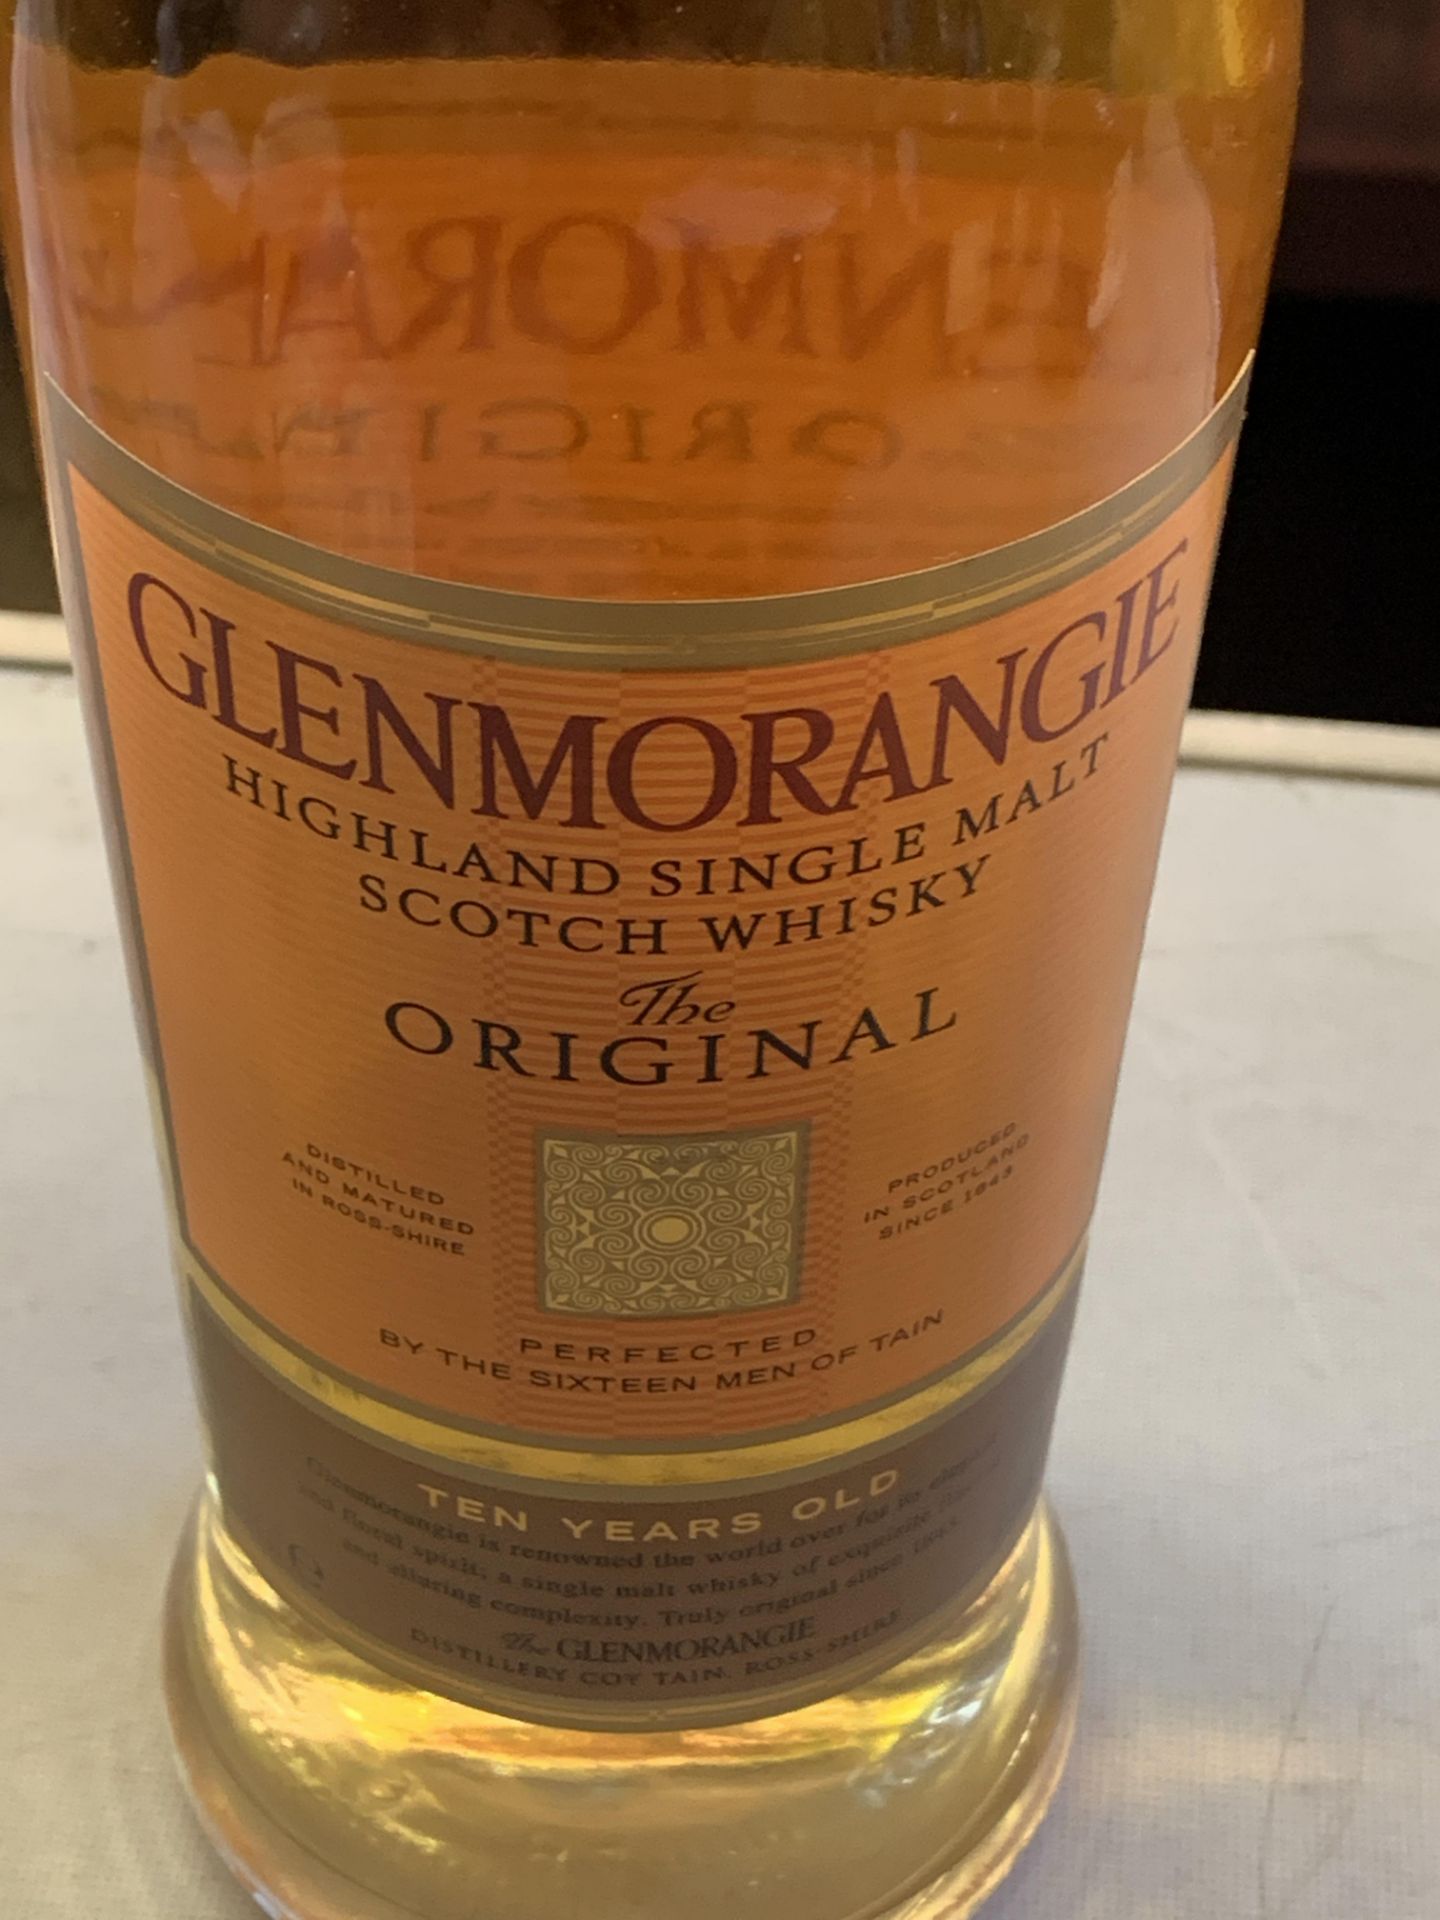 70cl bottle of Glenmorangie Highland Single Malt Scotch Whisky - Bild 2 aus 3